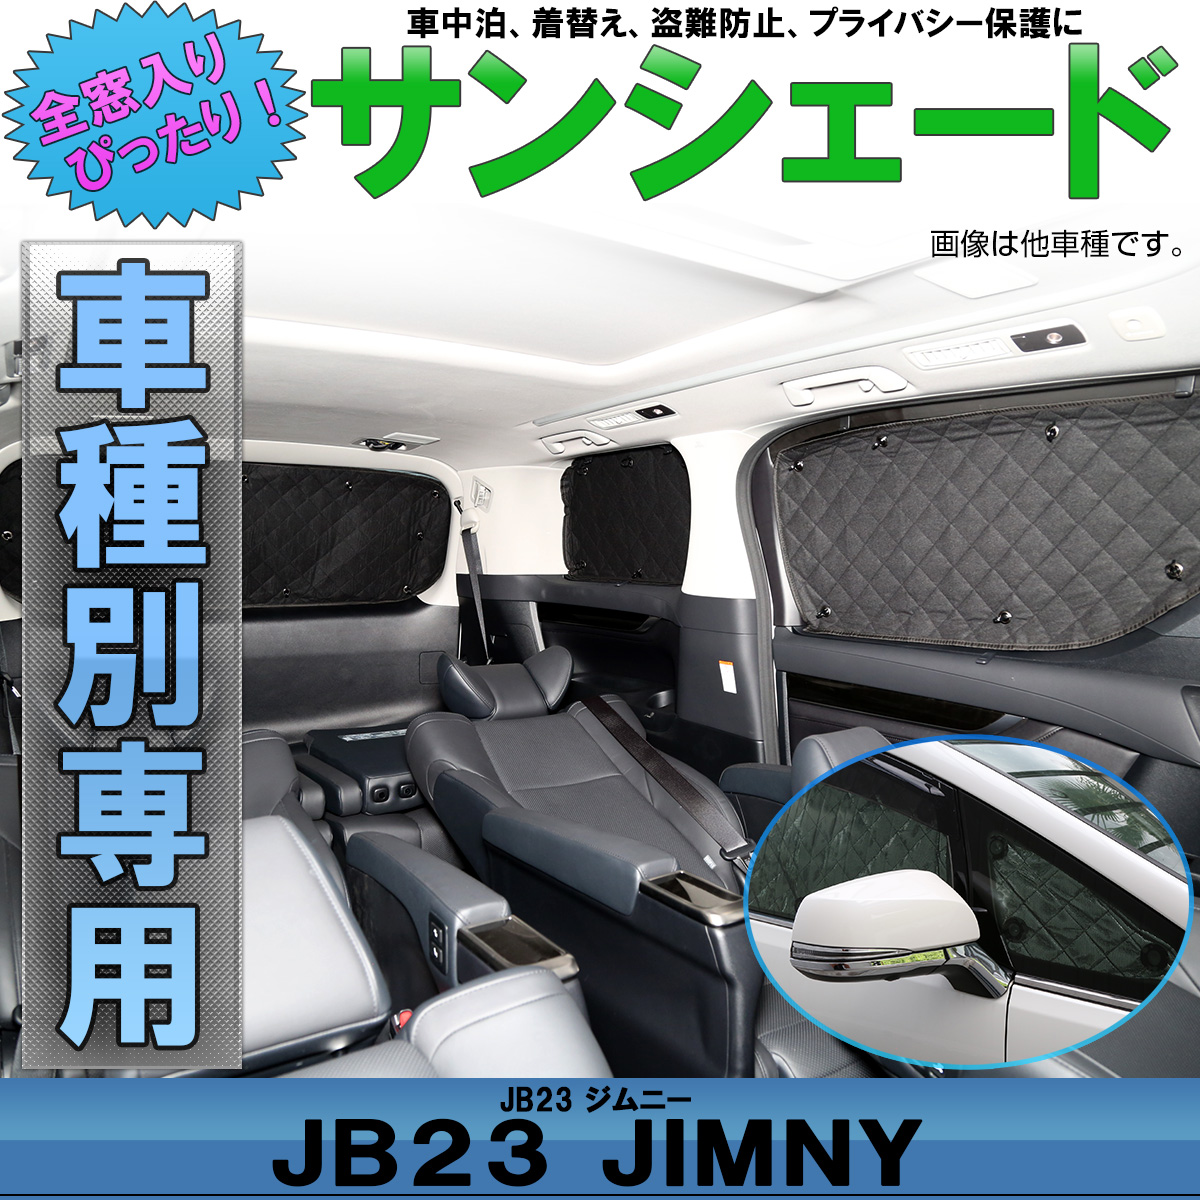 スズキ Jb23 ジムニー 専用設計 サンシェード全窓用セット 5層構造 ブラックメッシュ 車中泊 S 643